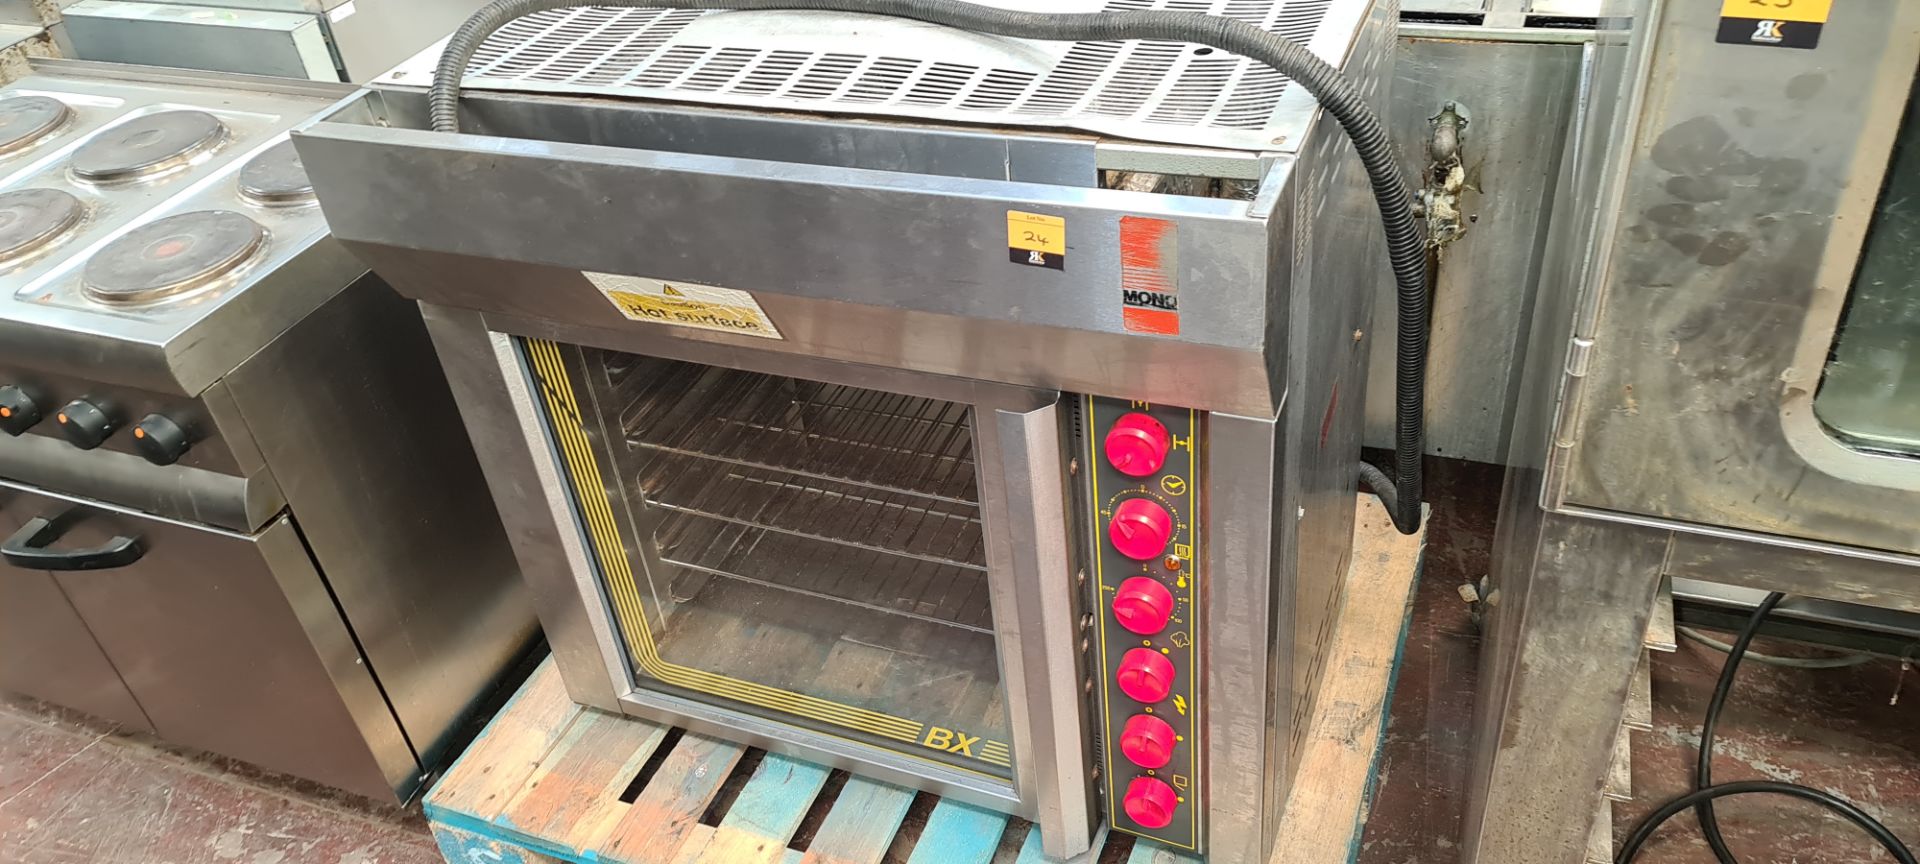 Mono BX oven model FG193